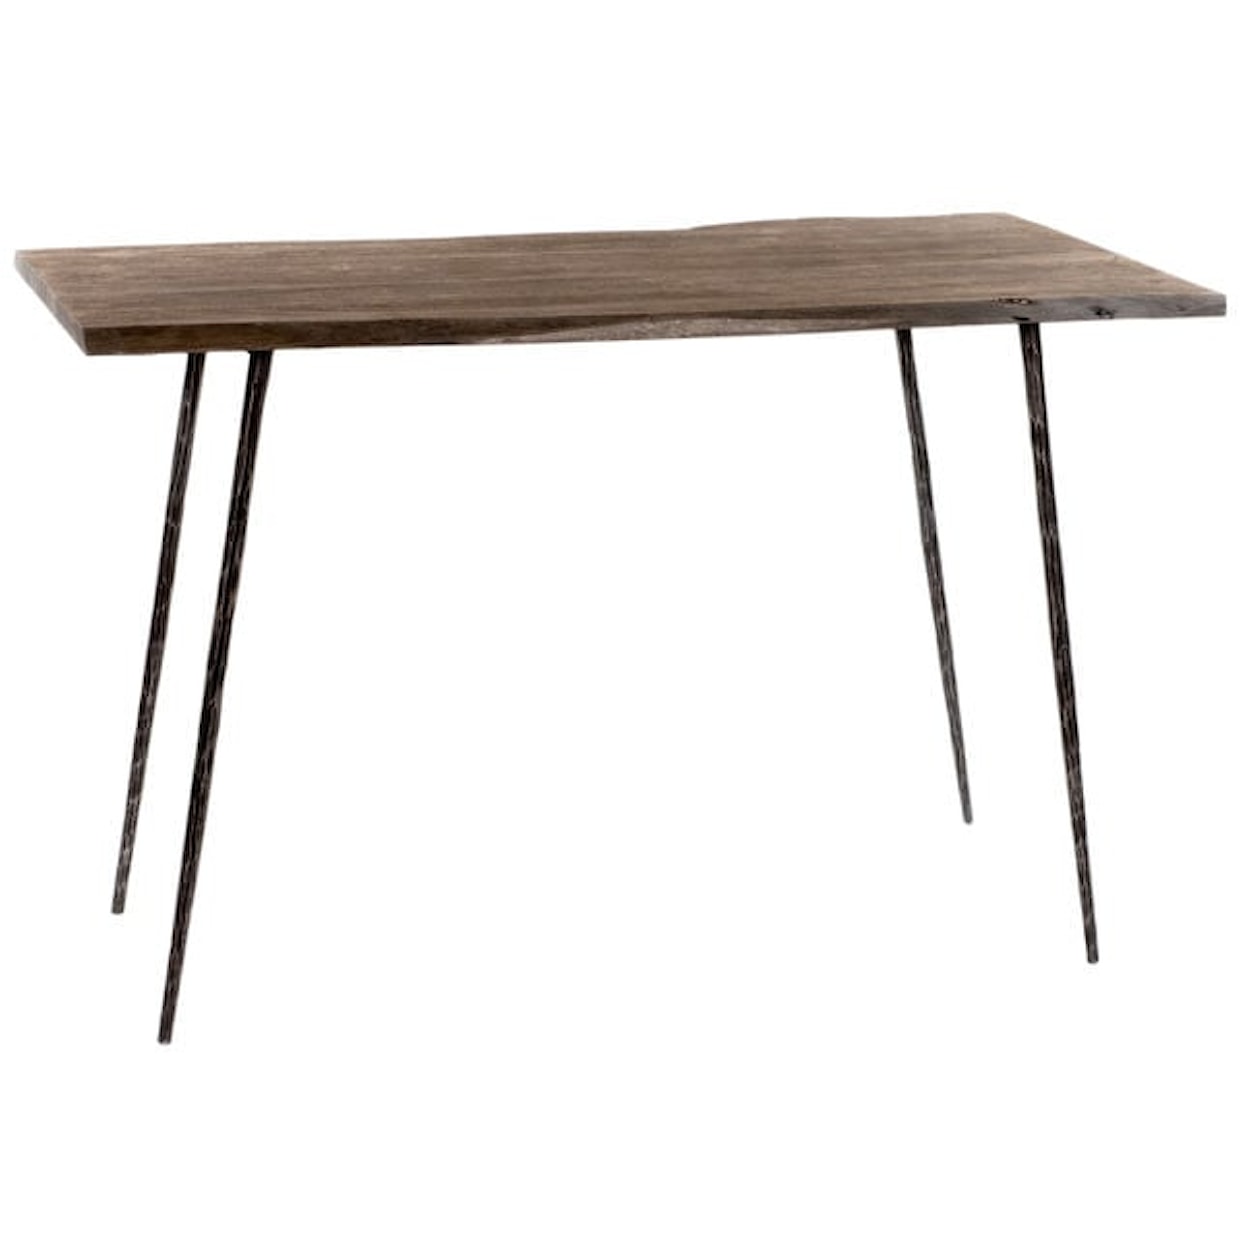 Dovetail Furniture Velez Coll. Velez Desk